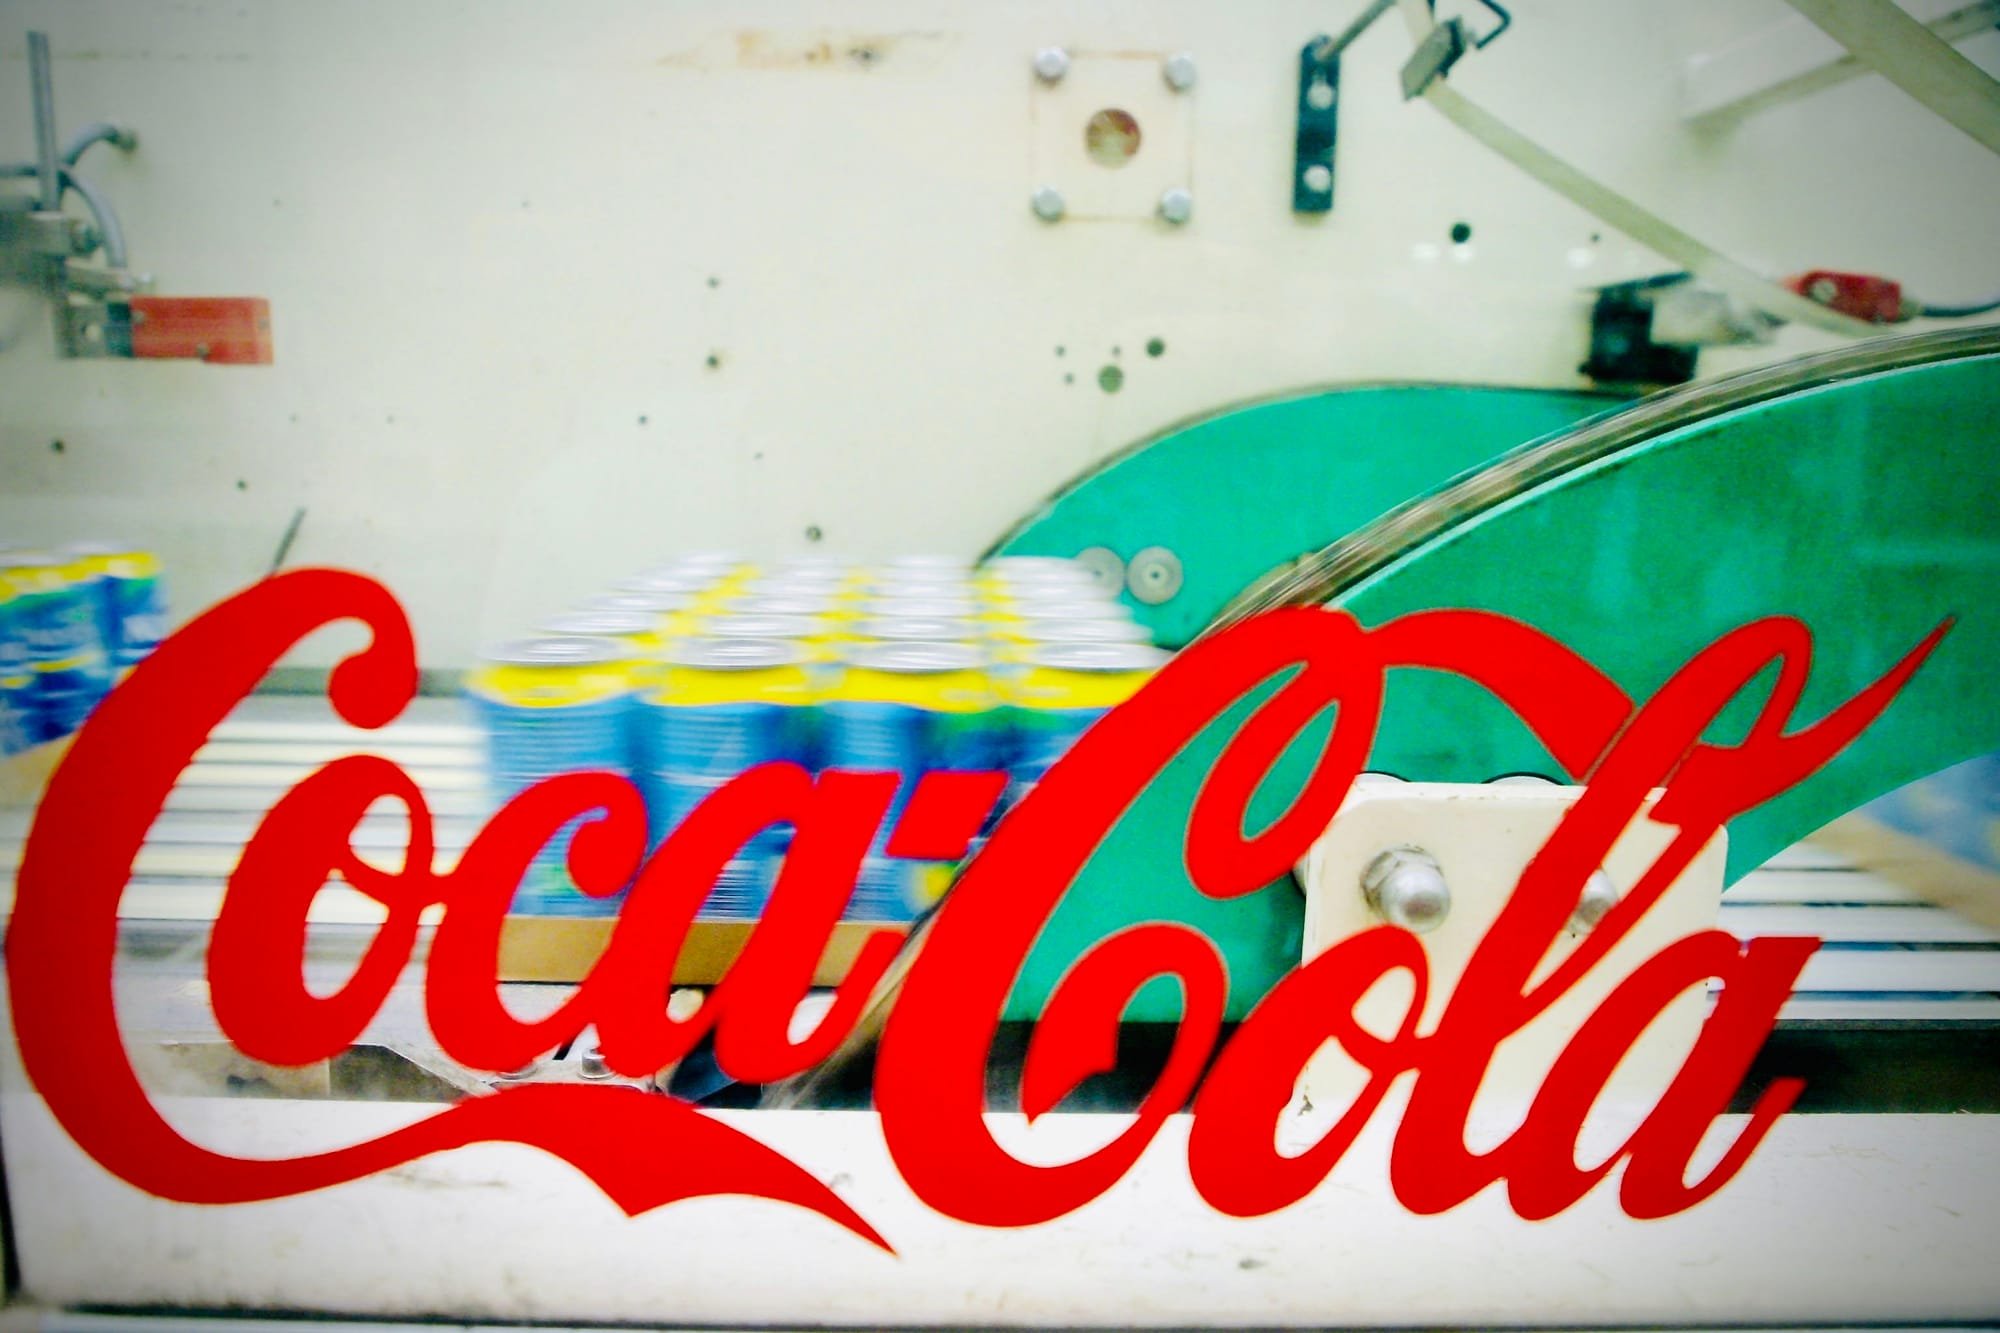 Coca cola factory Corfinio Abruzzo Italy